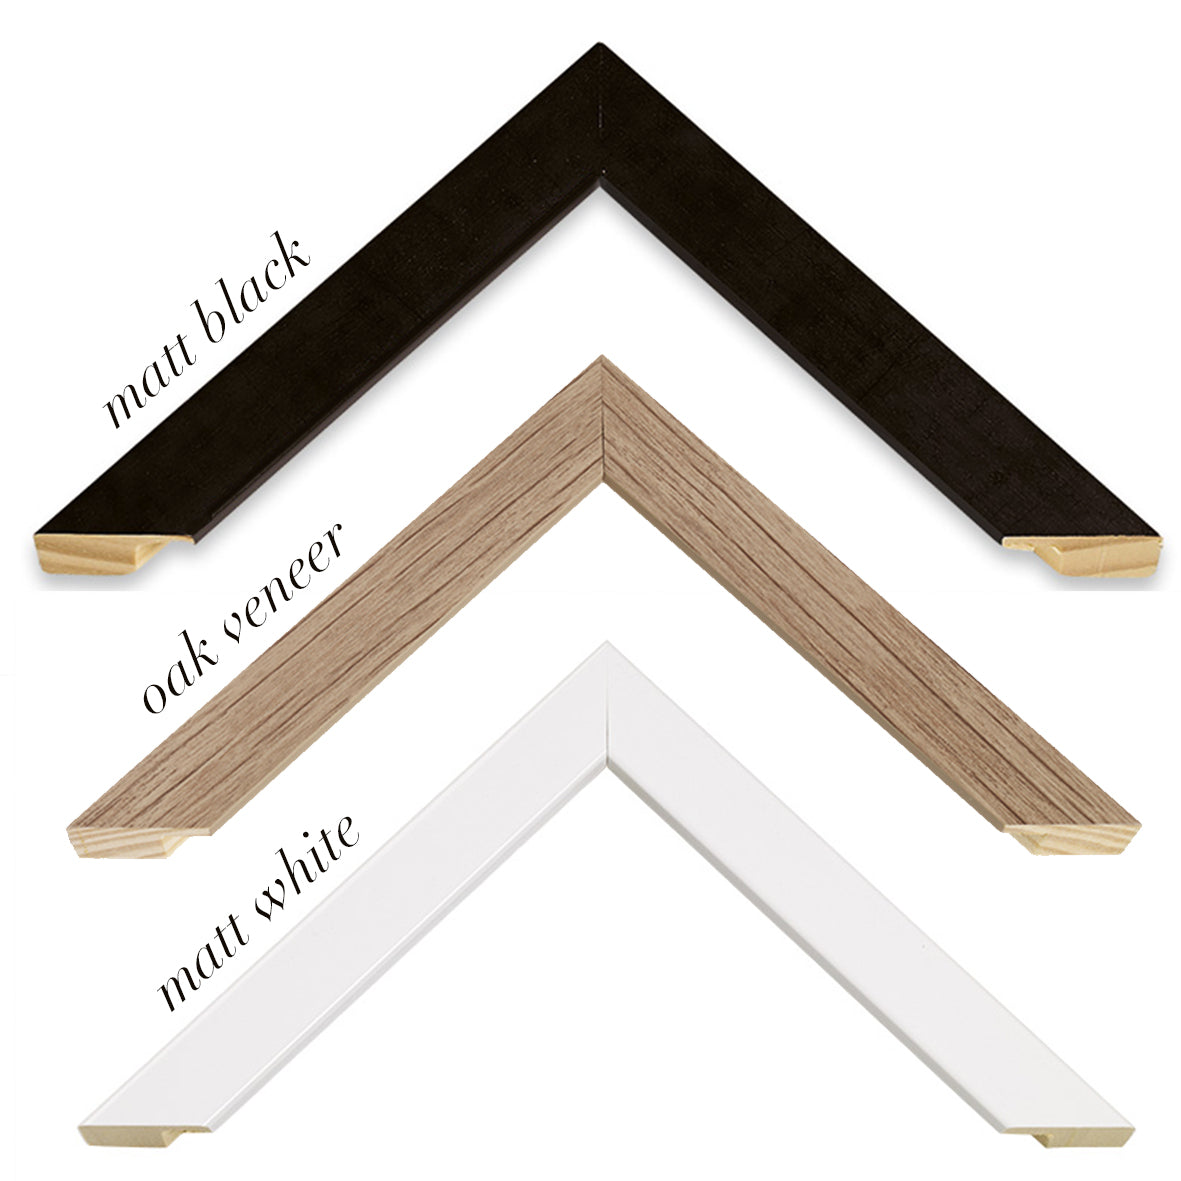 frames in matt black, matt white and oak veneer